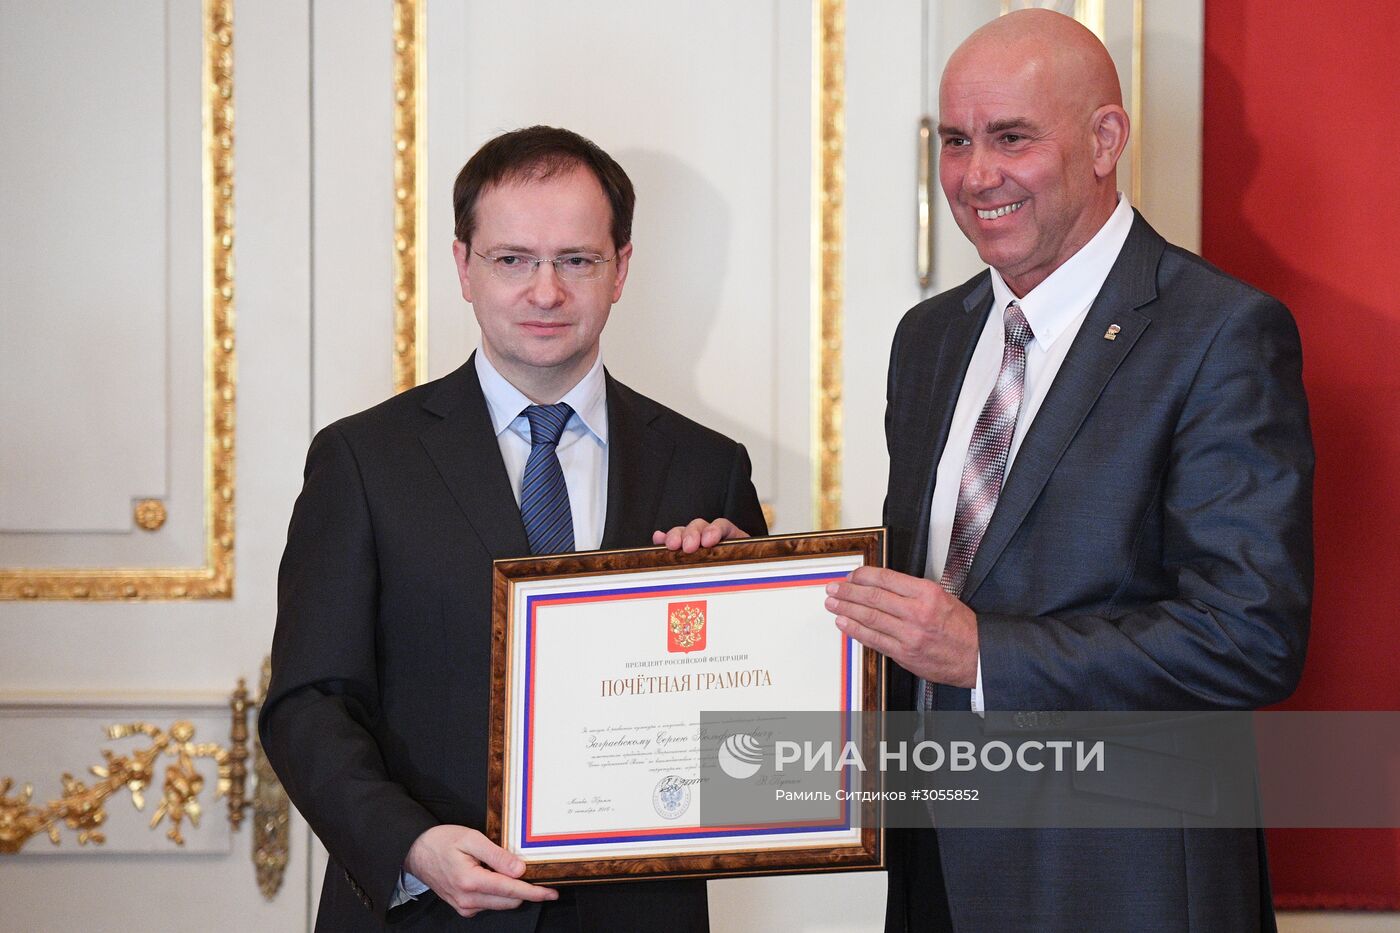 Церемония награждения деятелей культуры и искусства государственными наградами РФ и ведомственными наградами минкультуры РФ